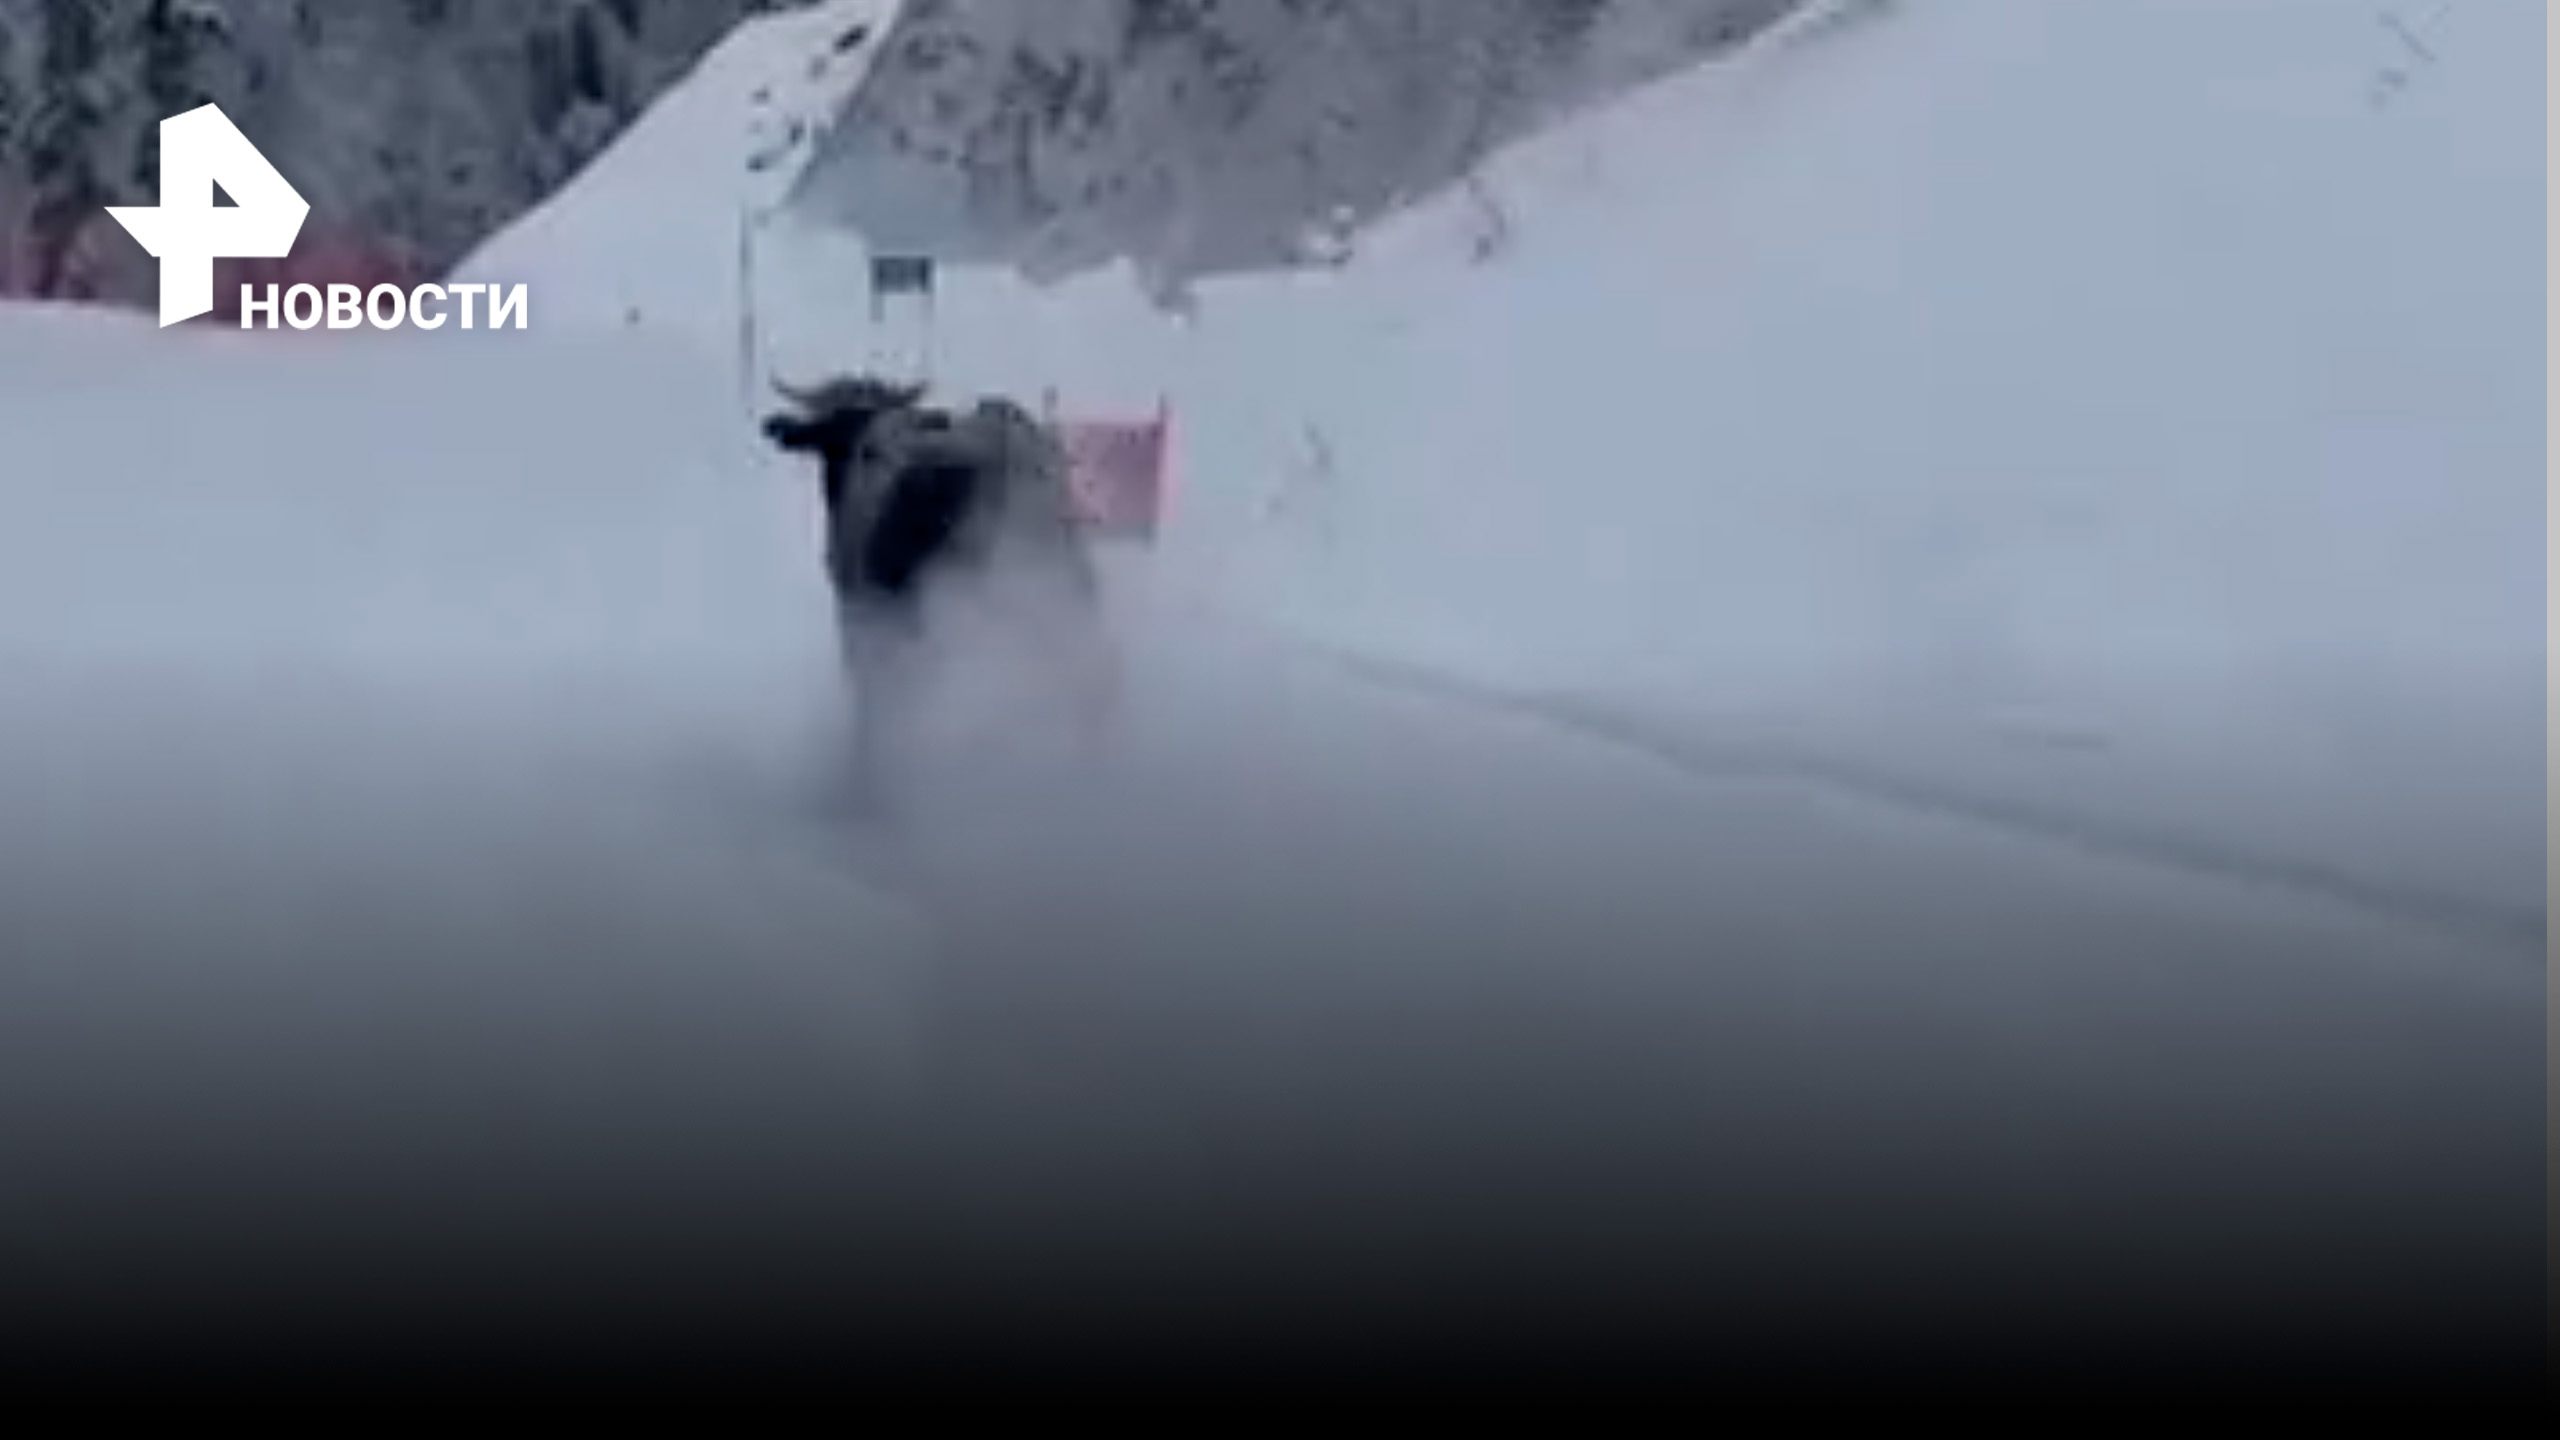 Бык пробежался по лыжной трассе, взрывая снег / РЕН Новости